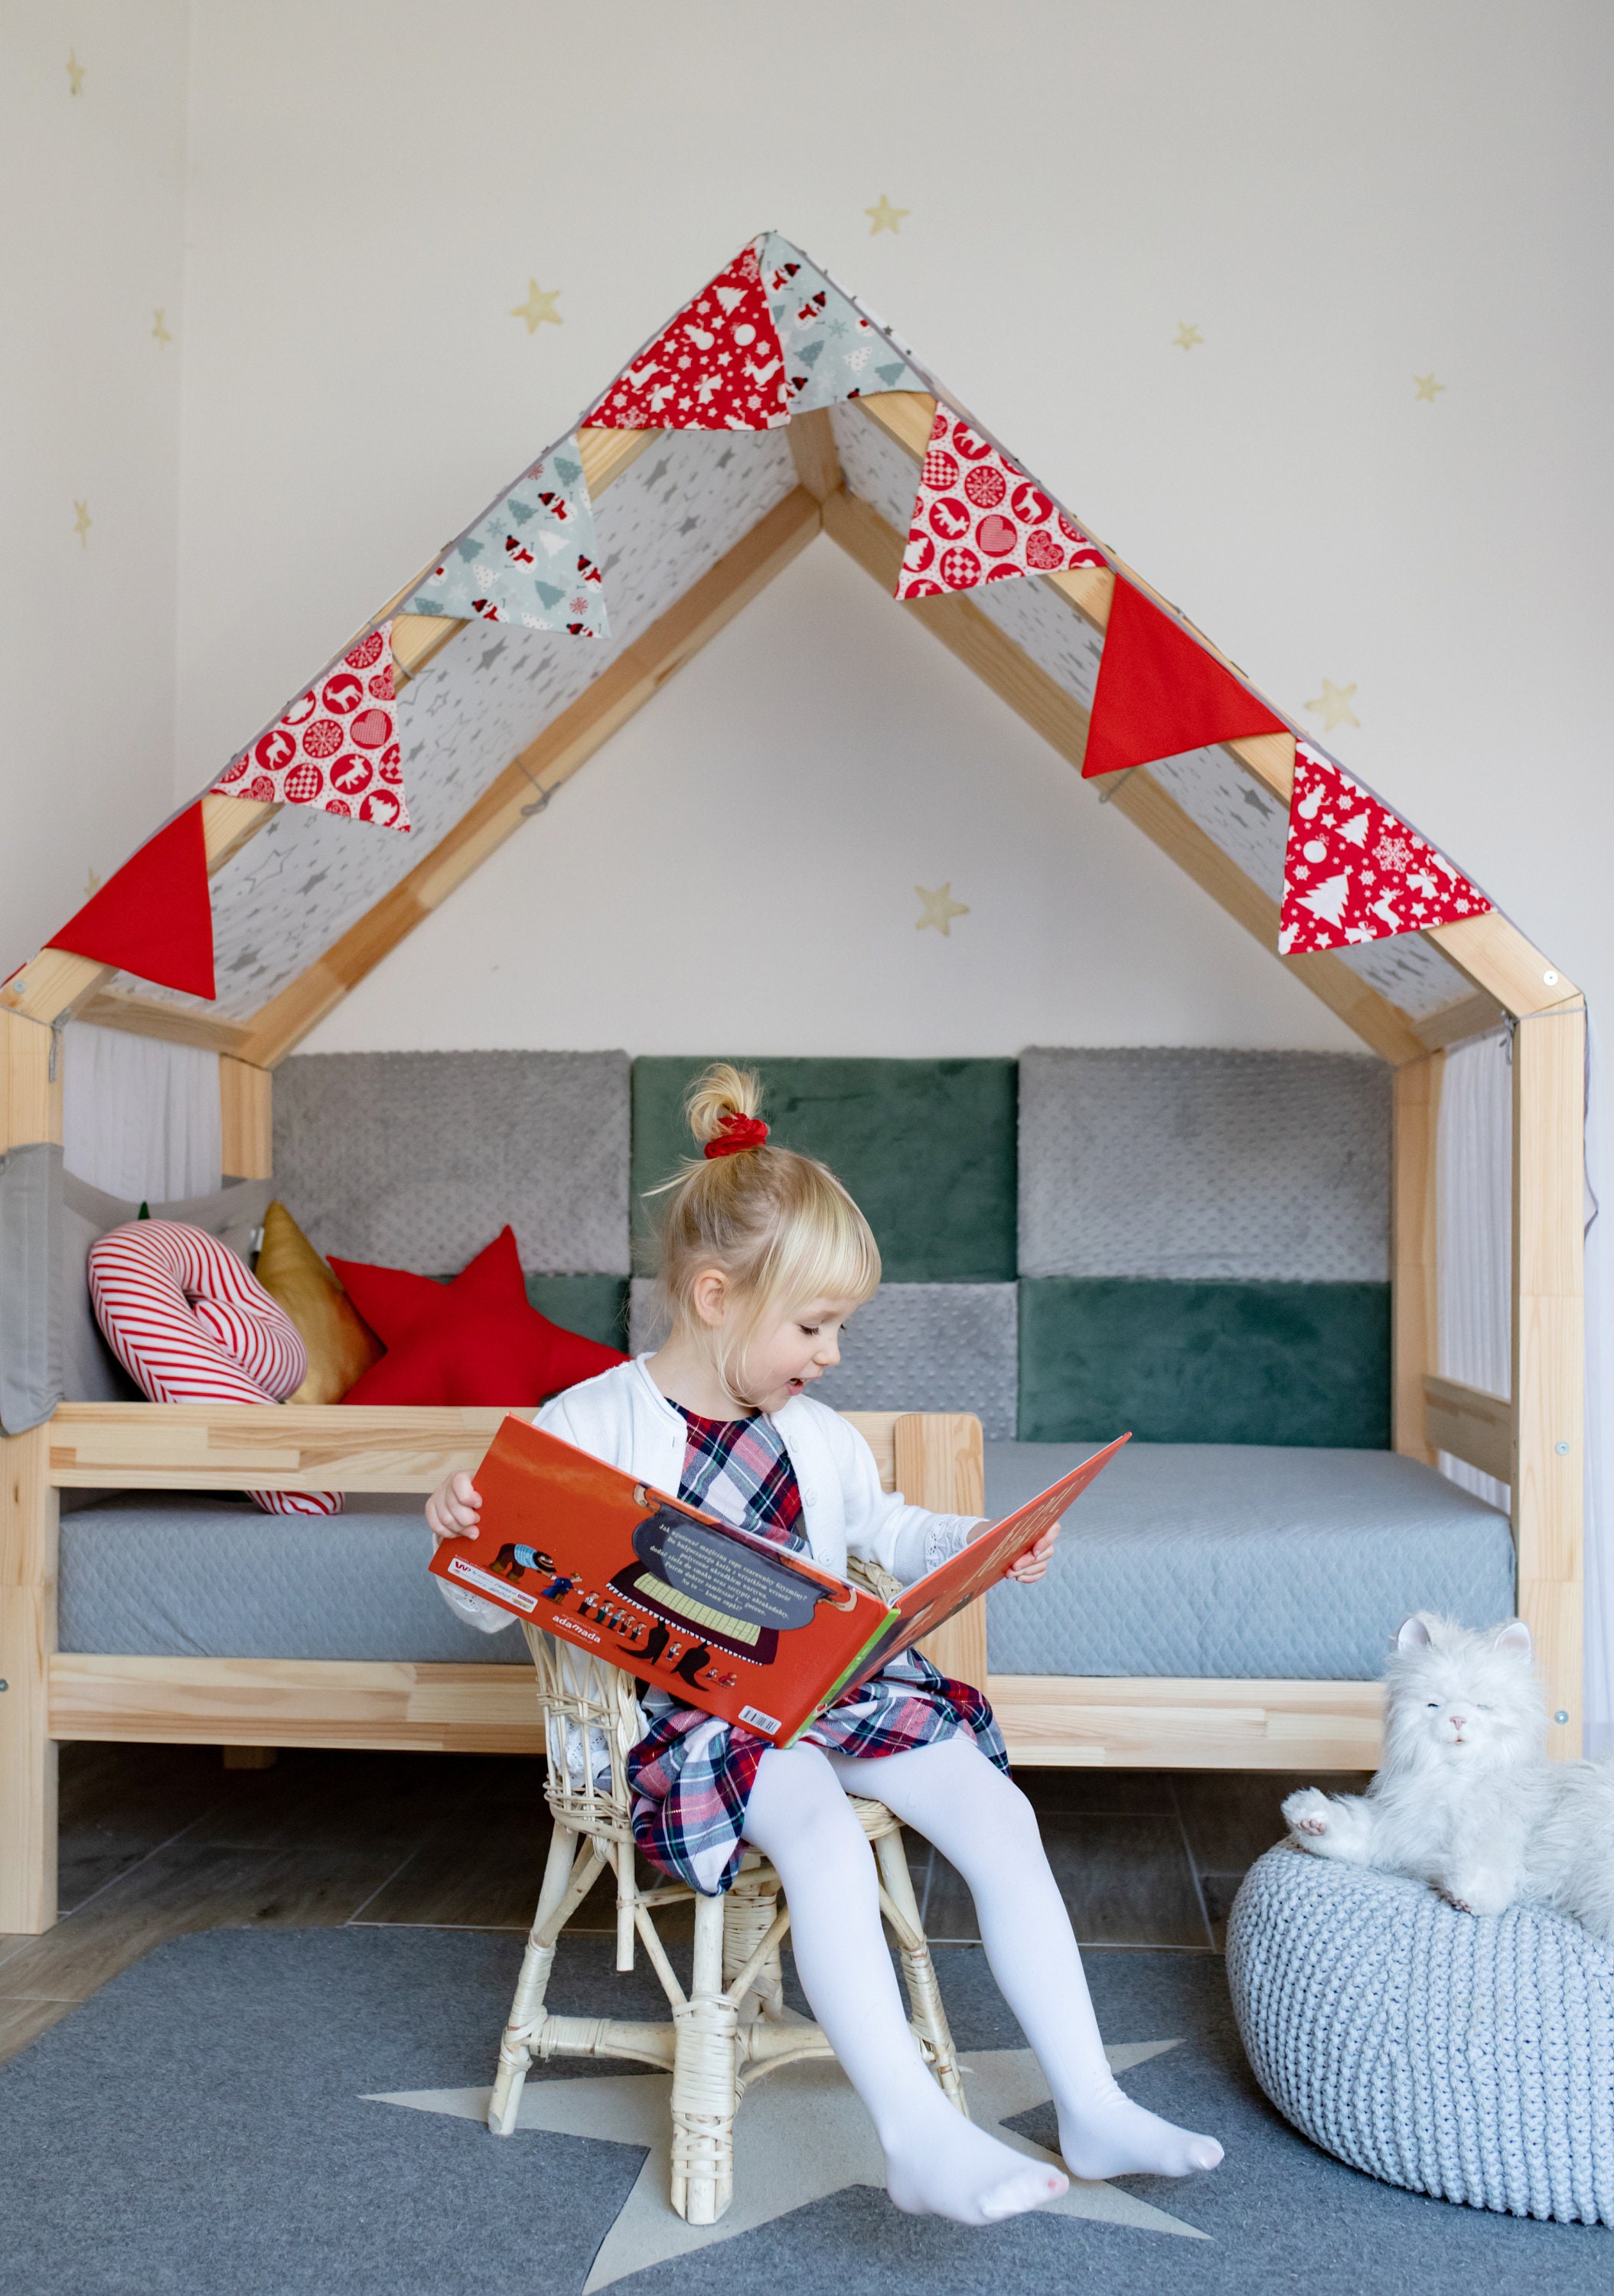 Cabane de jardin pour enfant, Maison de poupée en bois avec meubles et  accessoires, maison de rêve, 3 ans et plus, rose